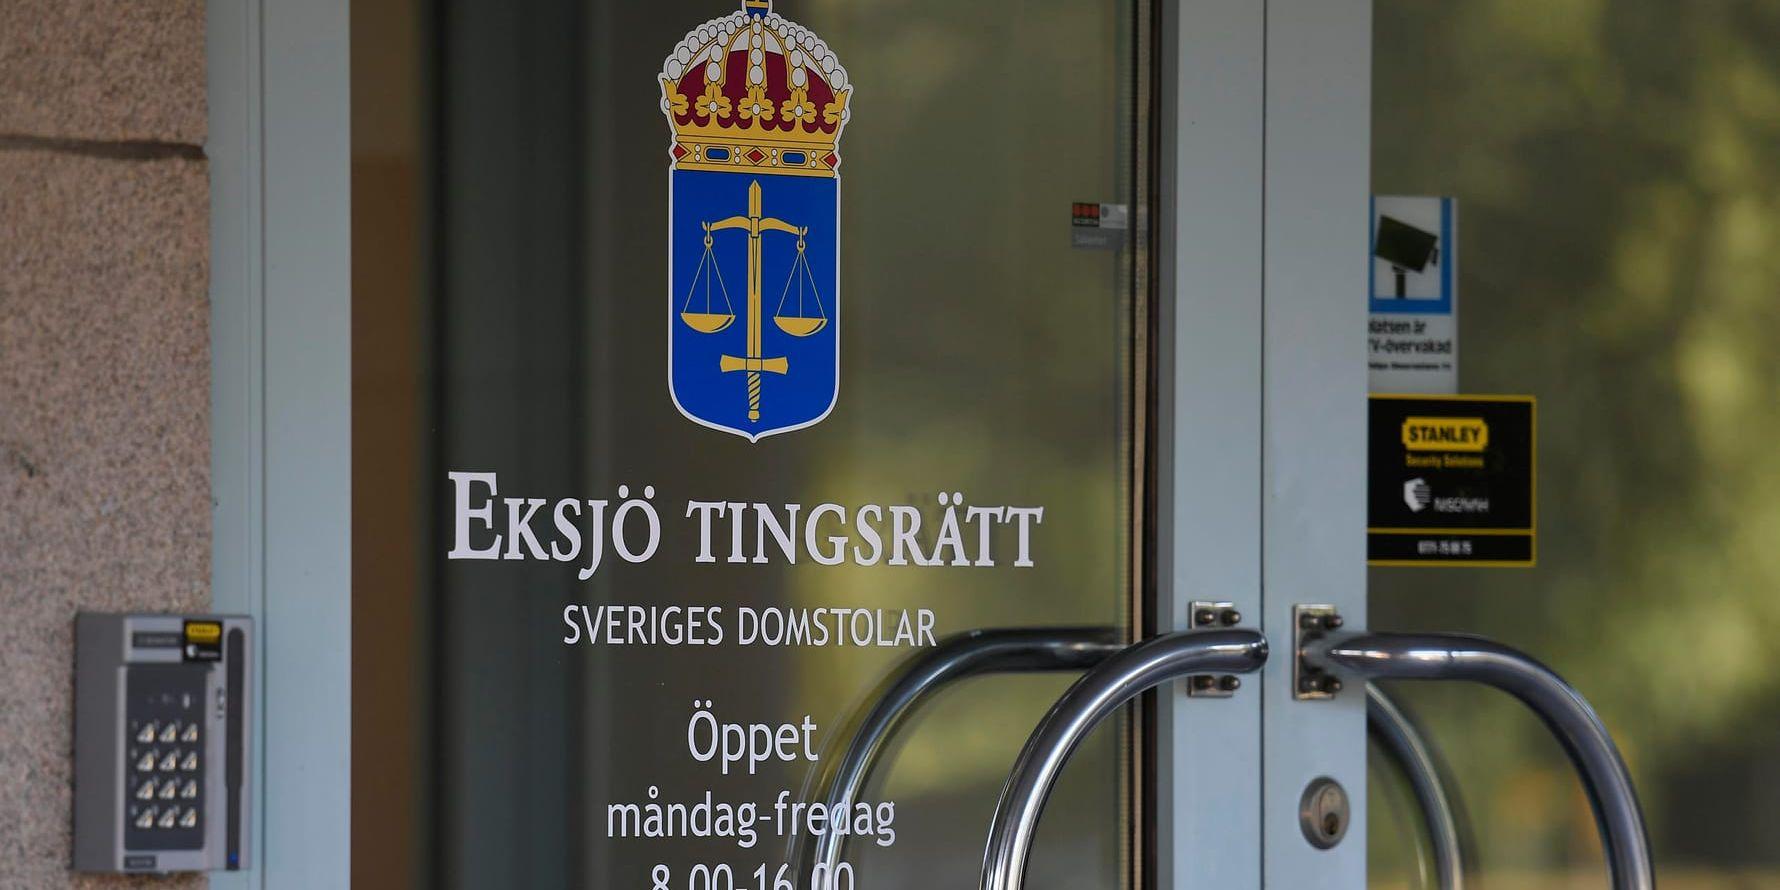 Atria Sverige och en ansvarig chef åtalas vid Eksjö tingsrätt efter en dödsolycka. Arkivbild.